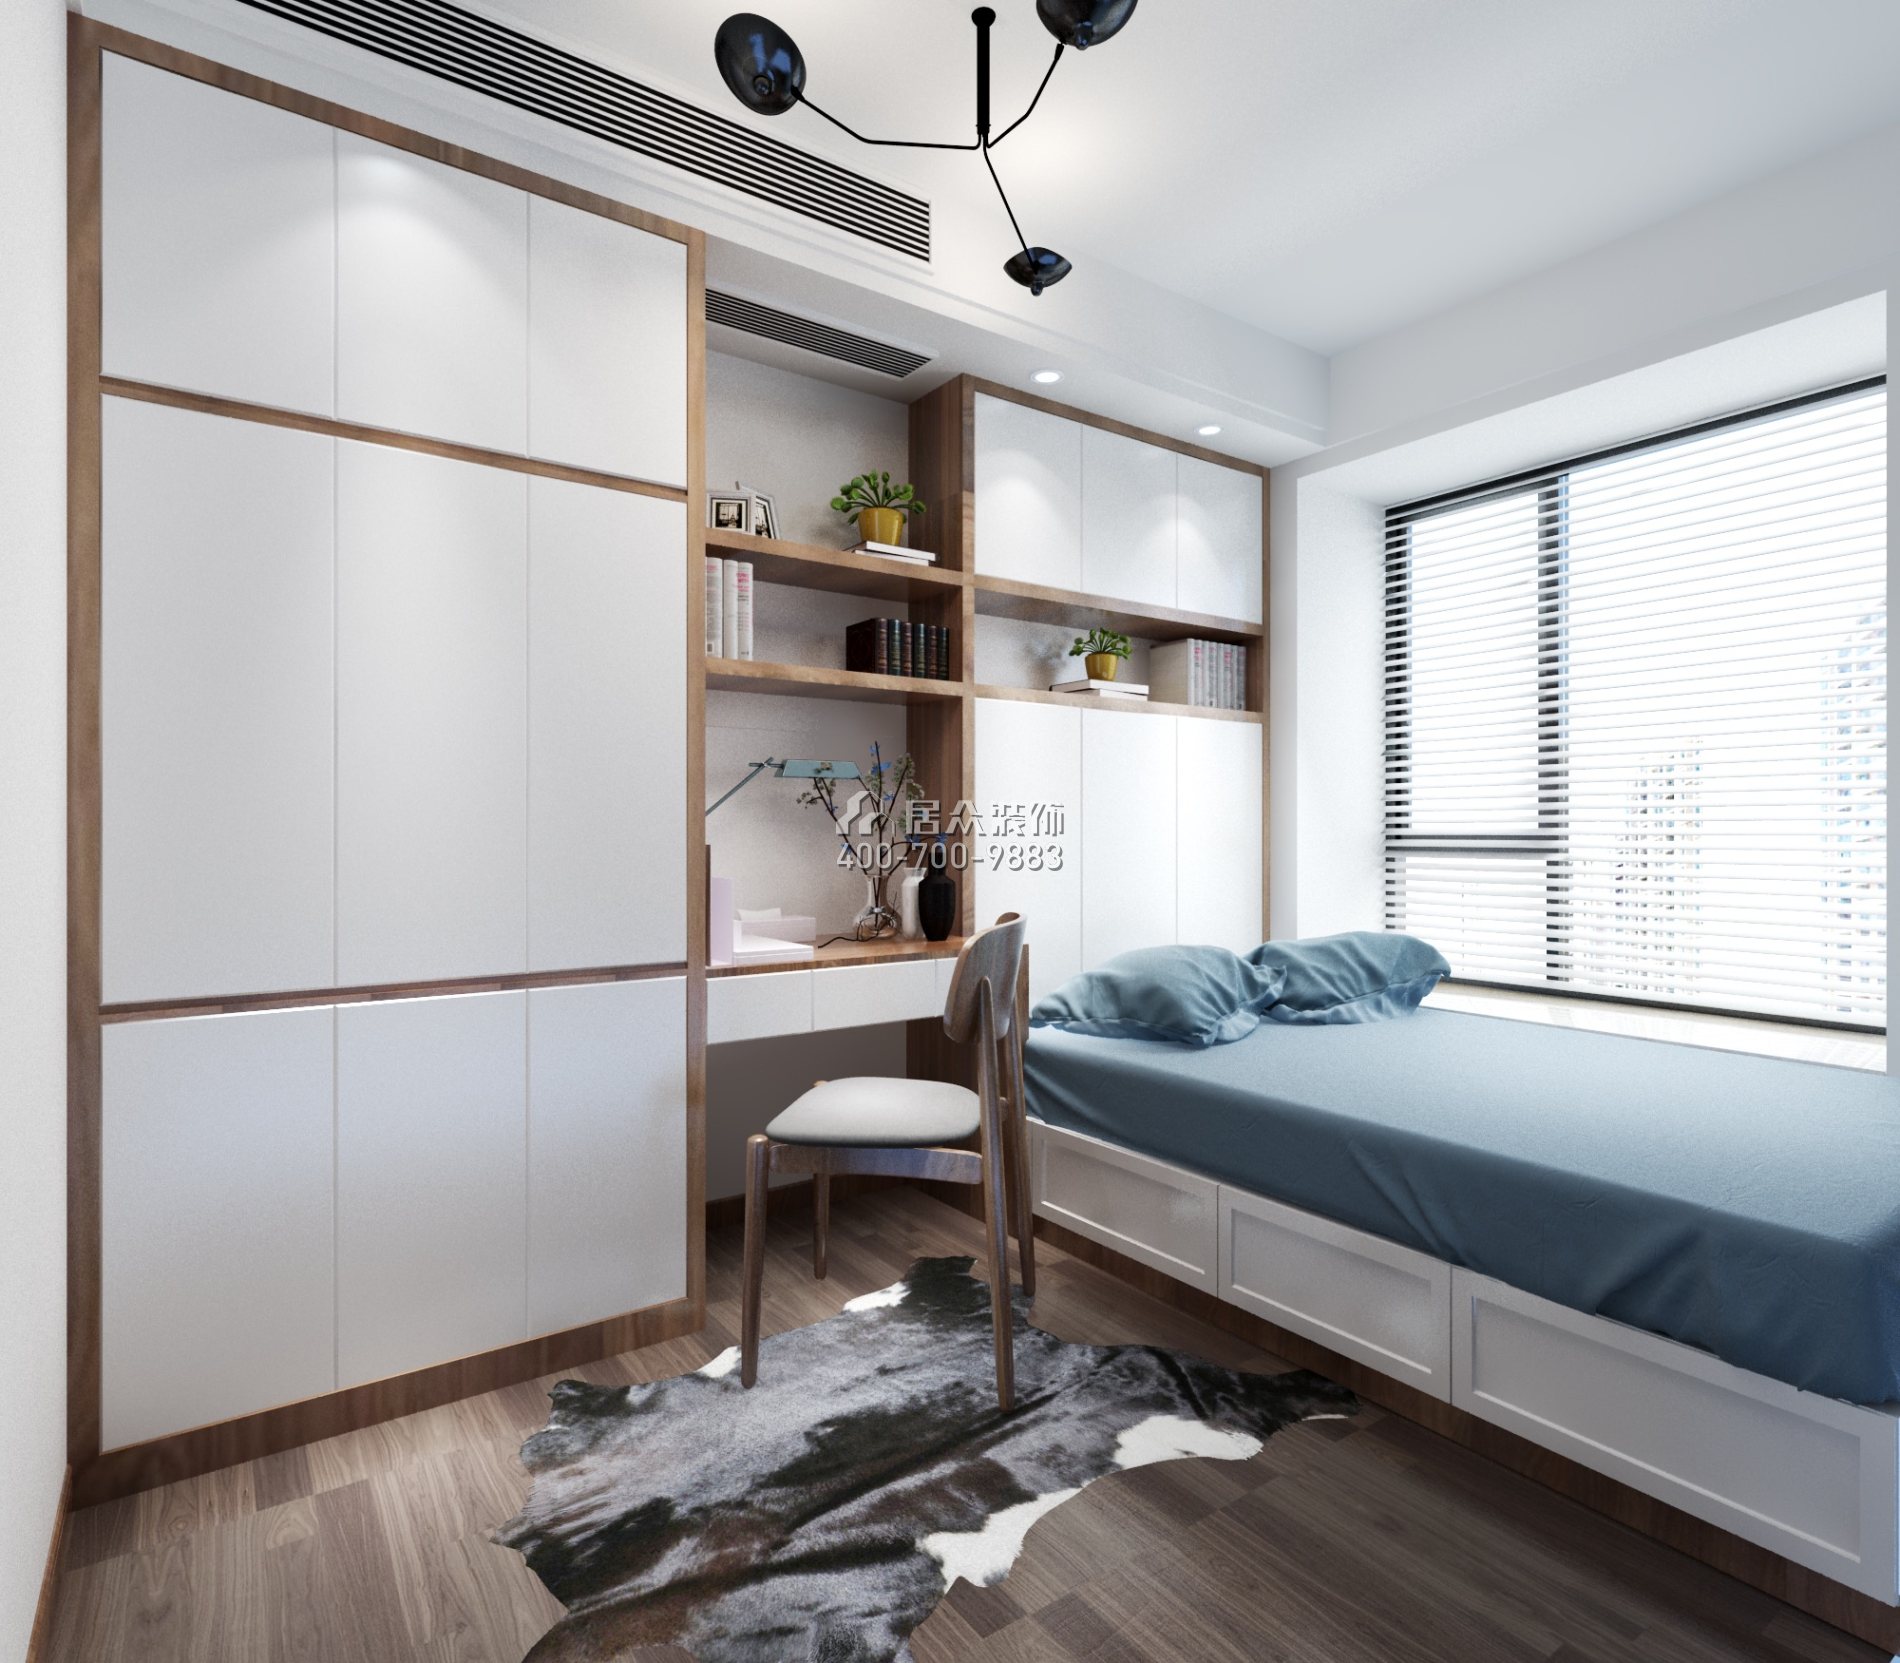 華發荔灣薈137平方米現代簡約風格平層戶型臥室書房一體裝修效果圖